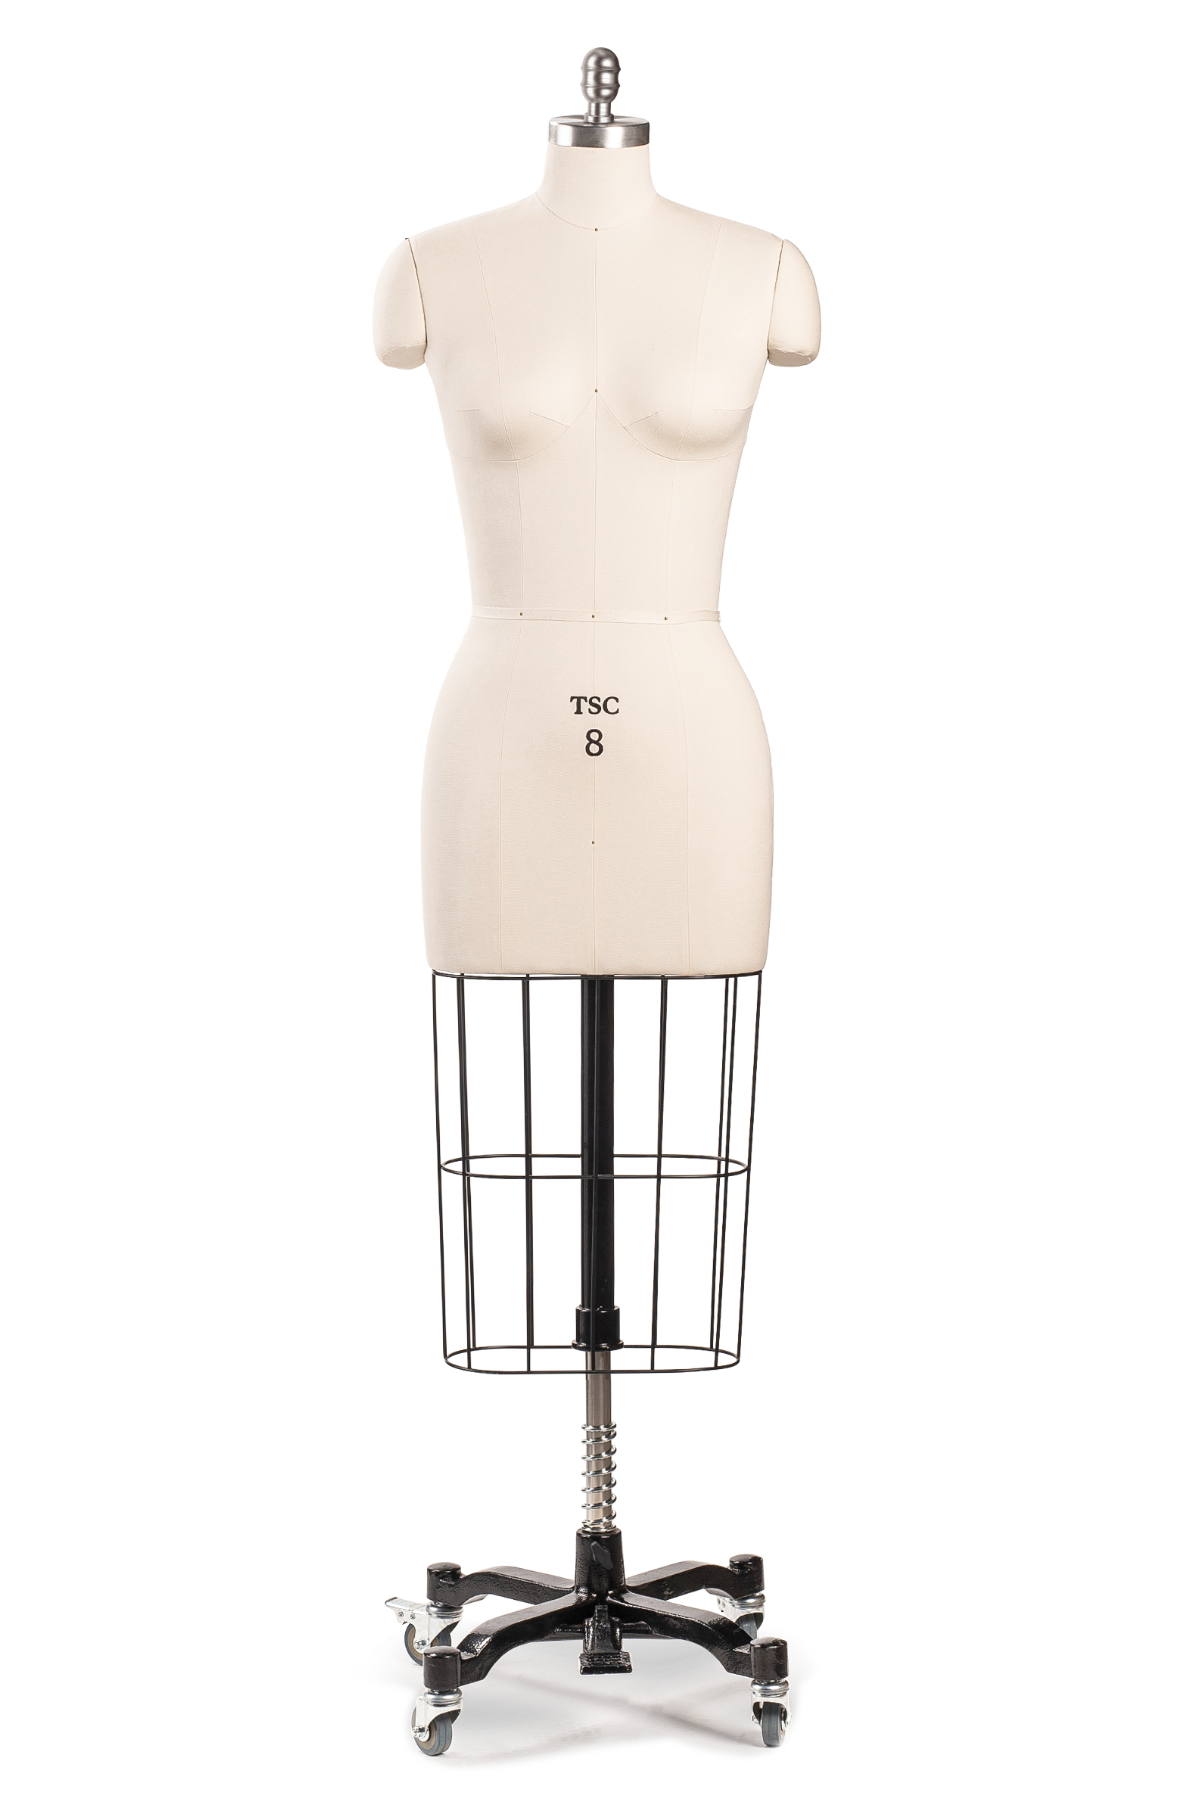 Adjustable Dress Form For Sewing Full Figure Female Mannequin Torso Base Medium 